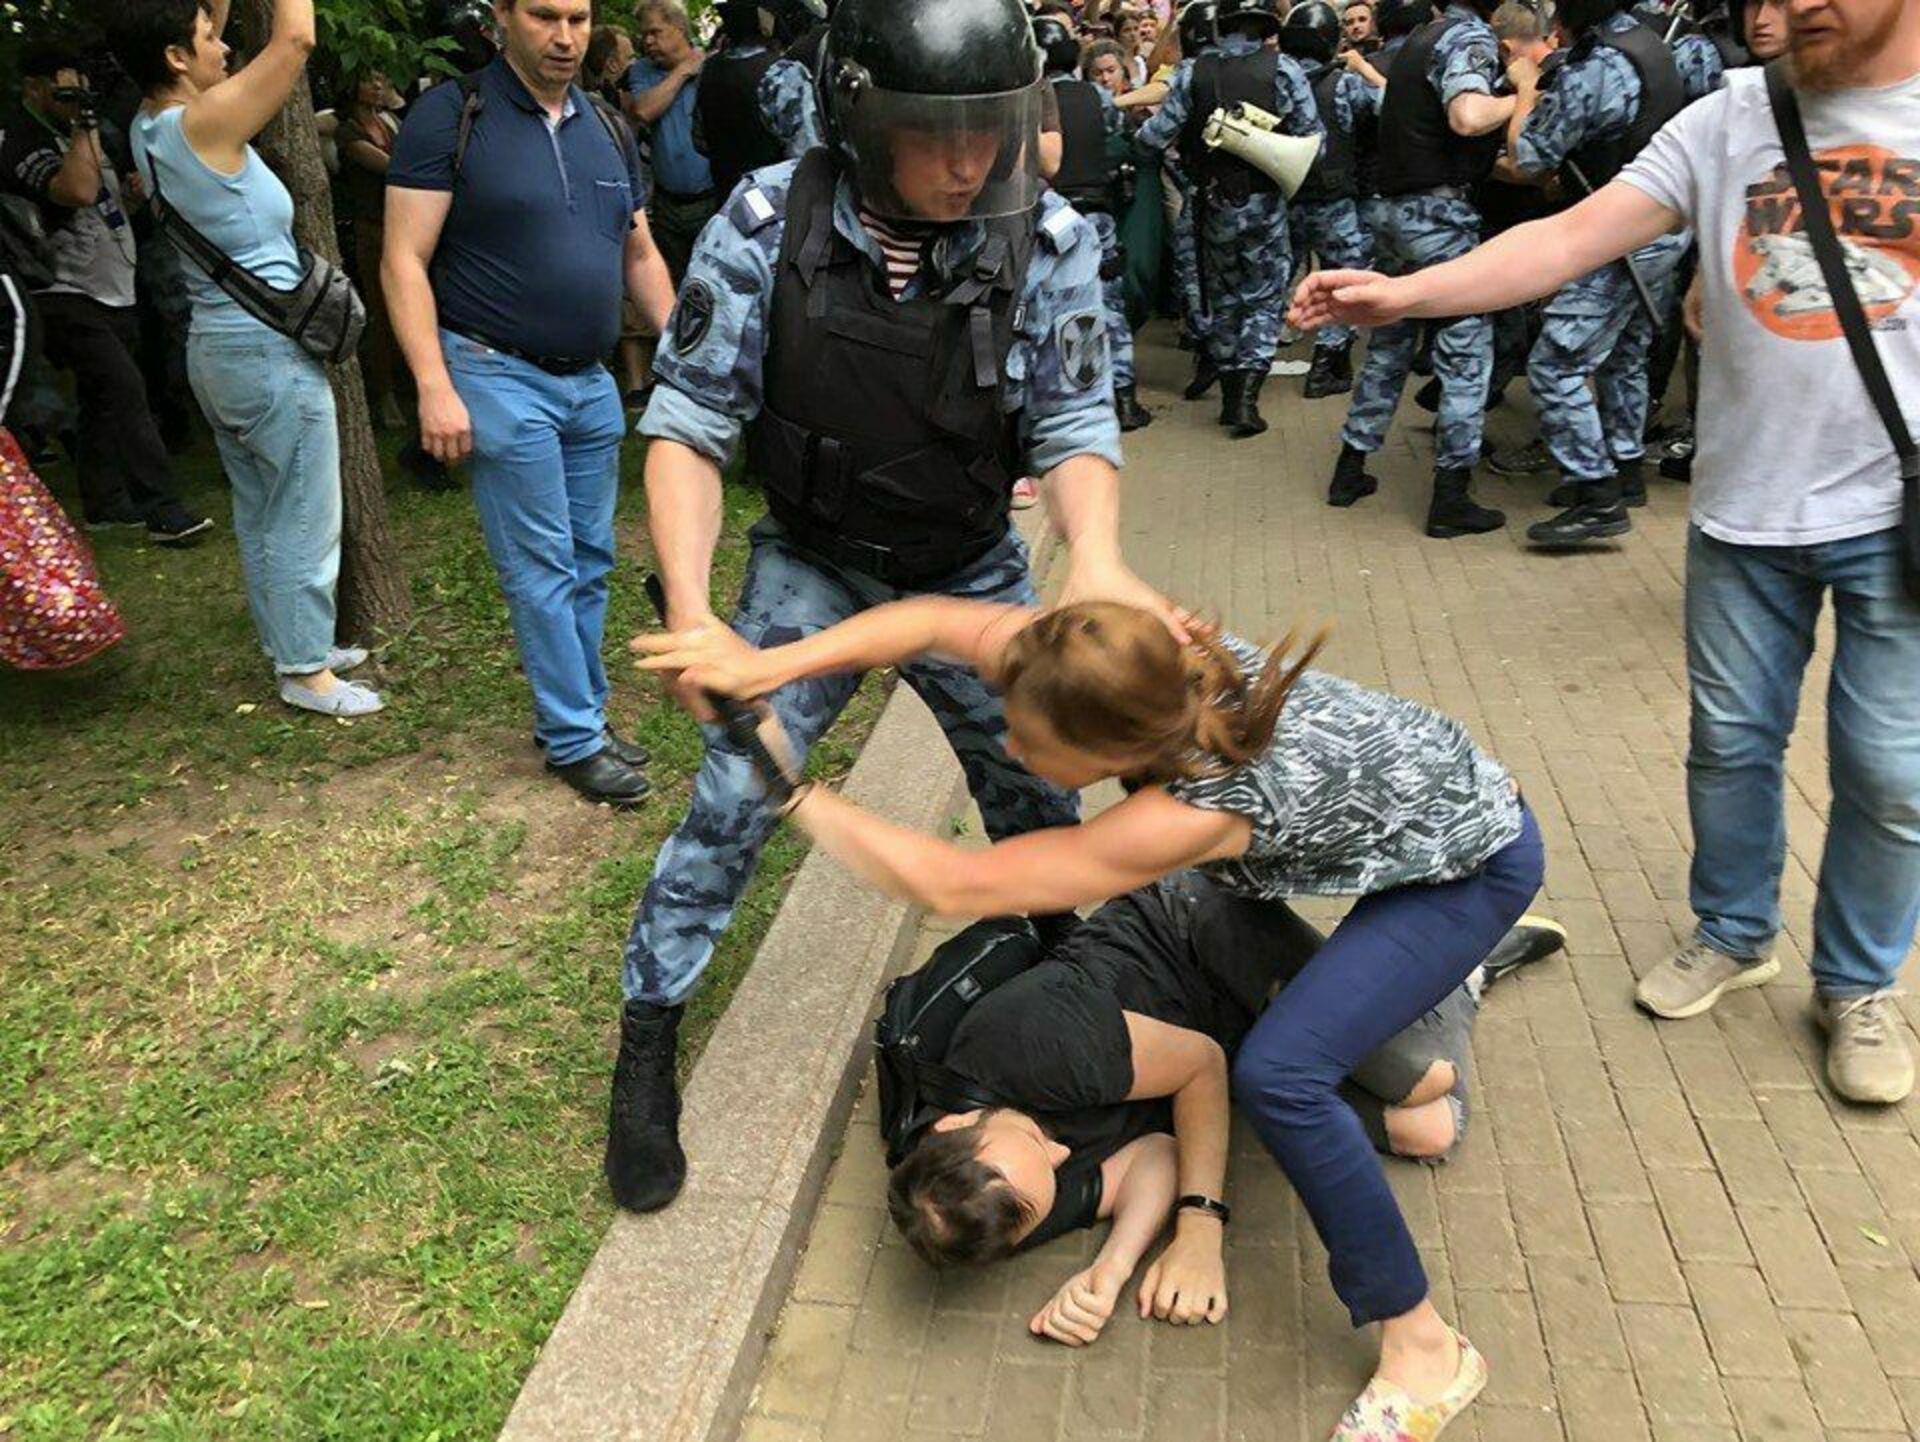 Сегодня свежие новости события что происходит. Задержание на митинге в Москве.